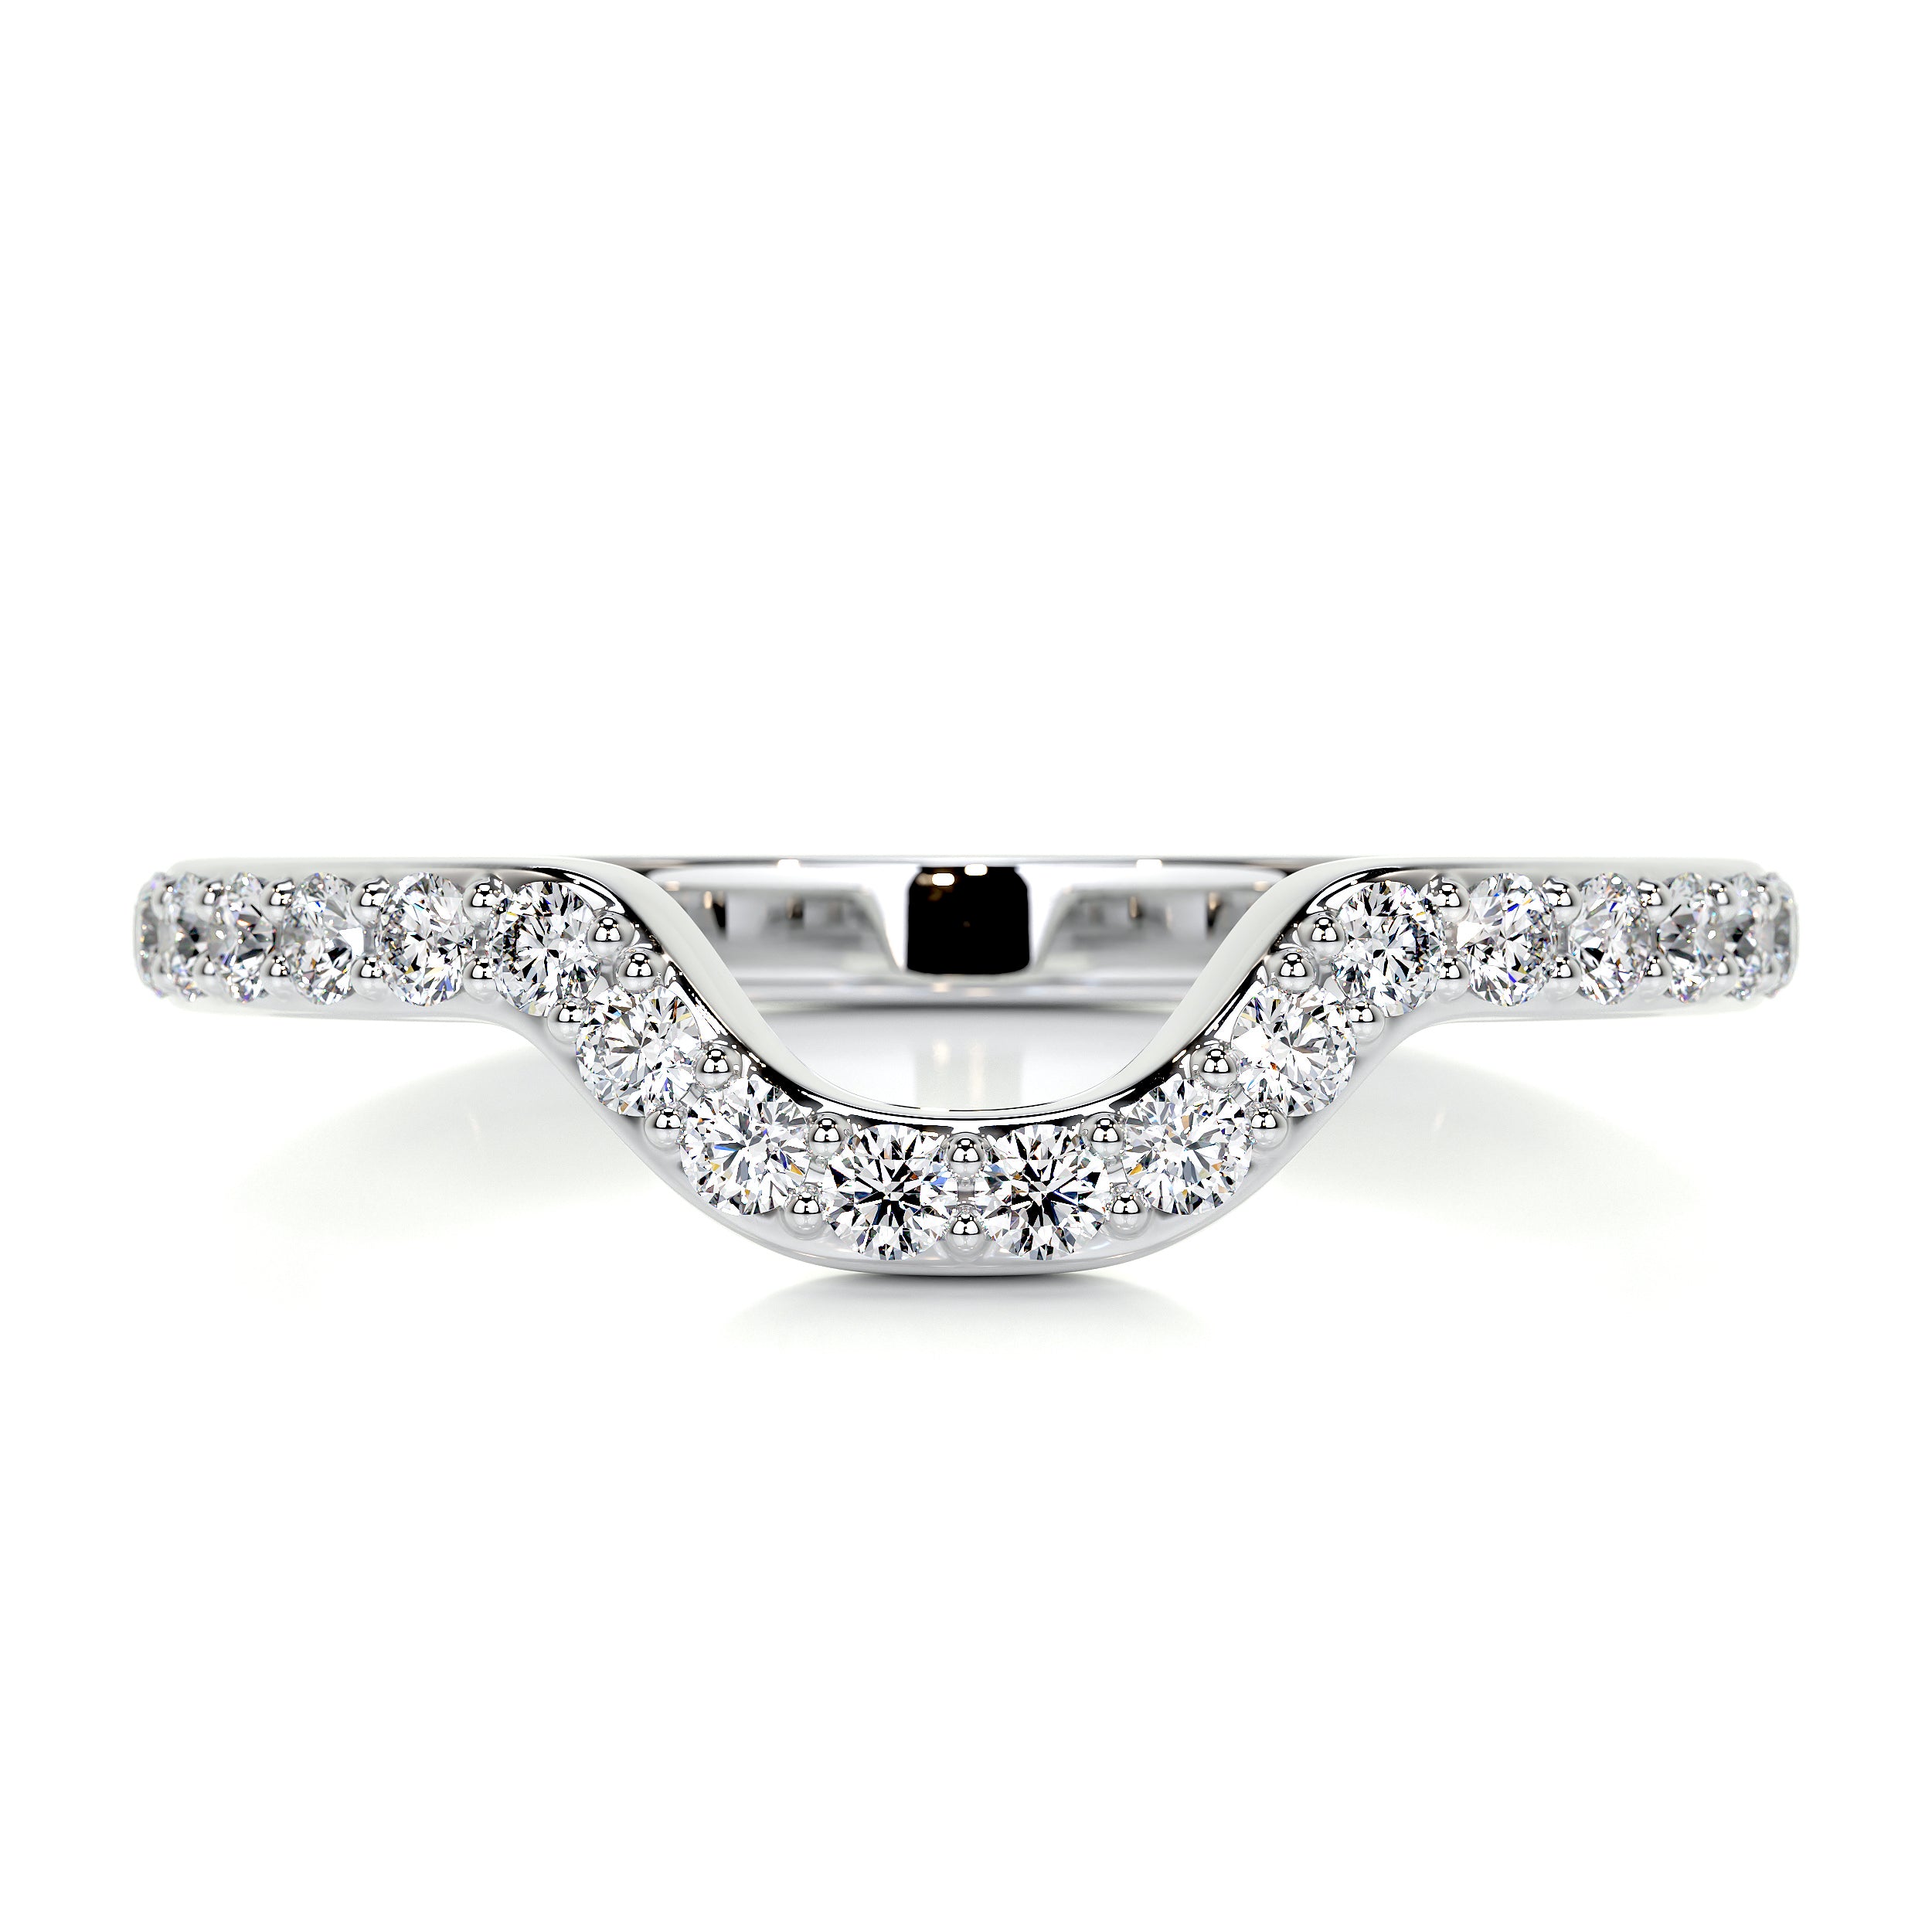 Nina Diamond Wedding Ring   (0.2 Carat) -18K White Gold